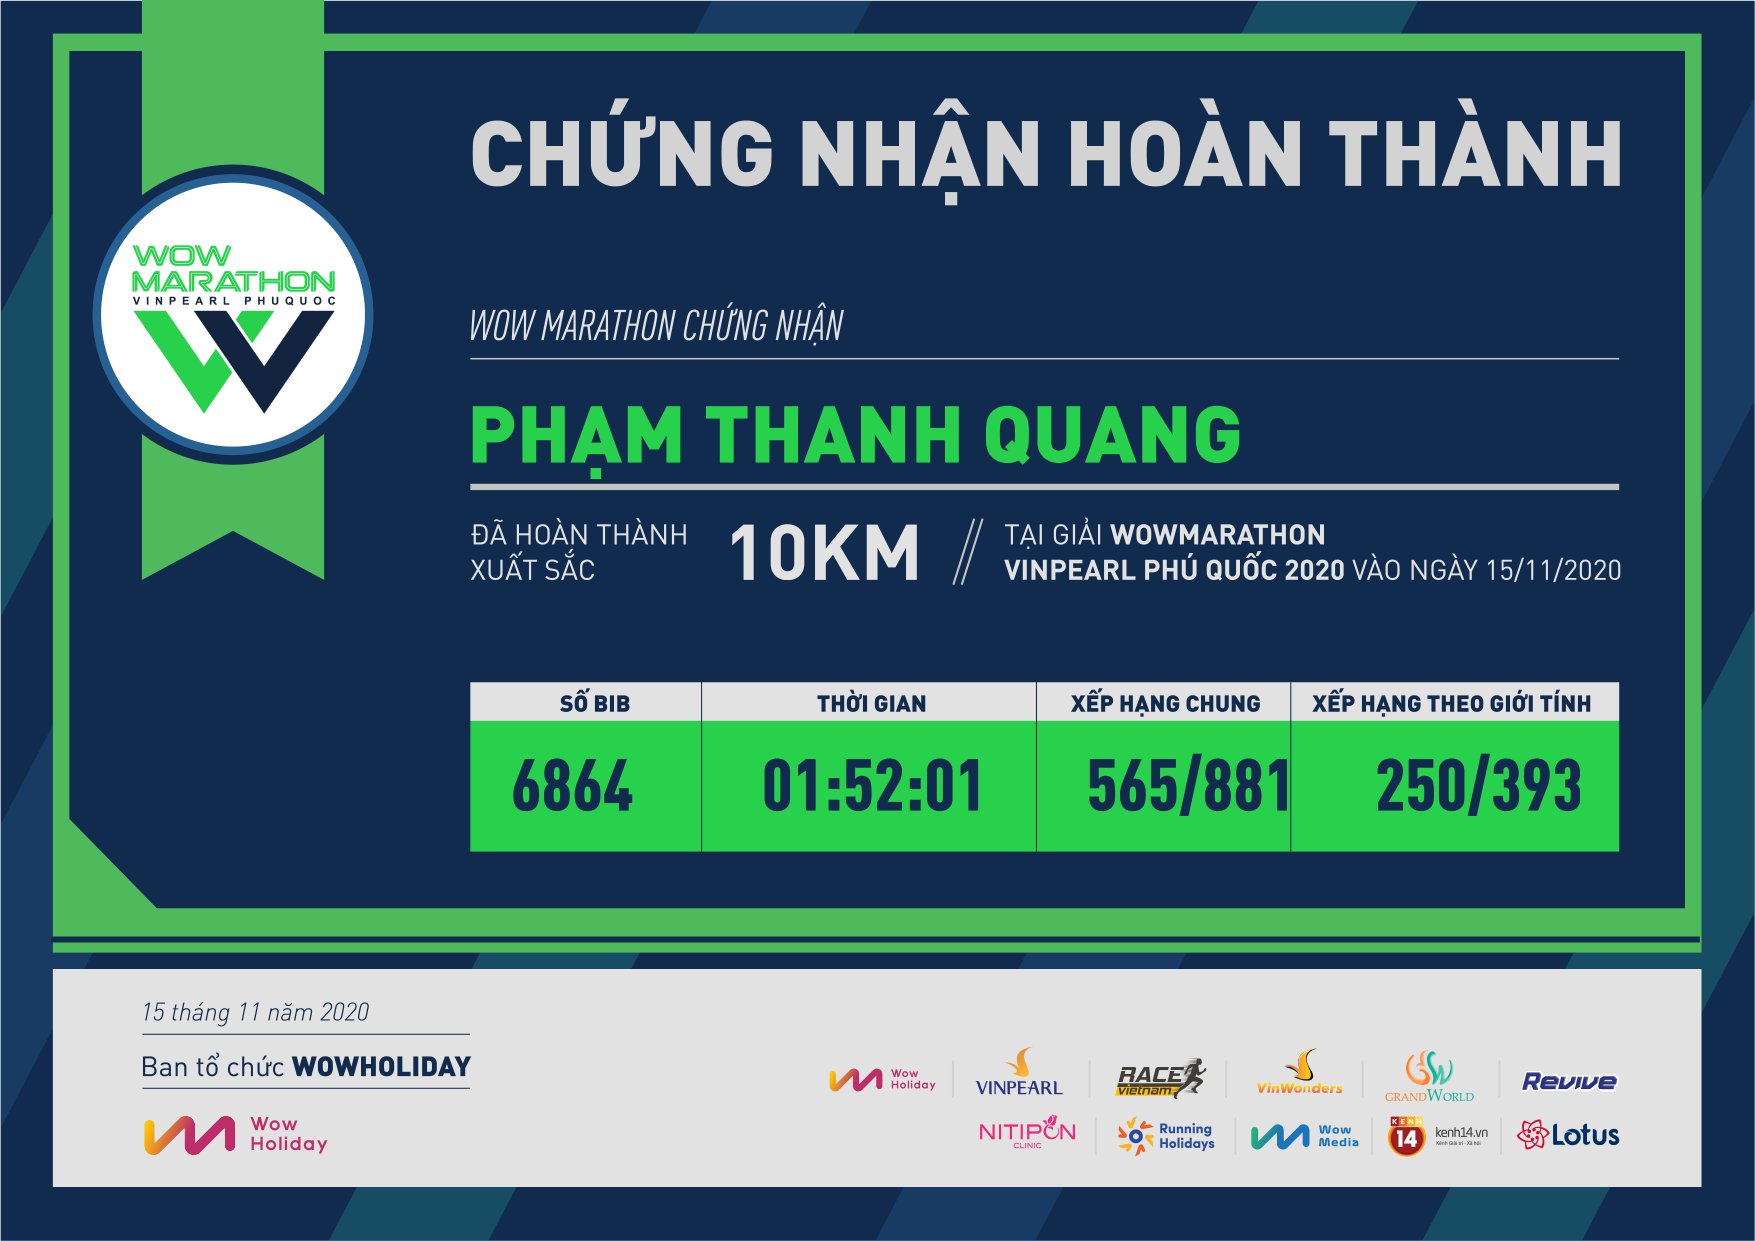 6864 - Phạm Thanh Quang